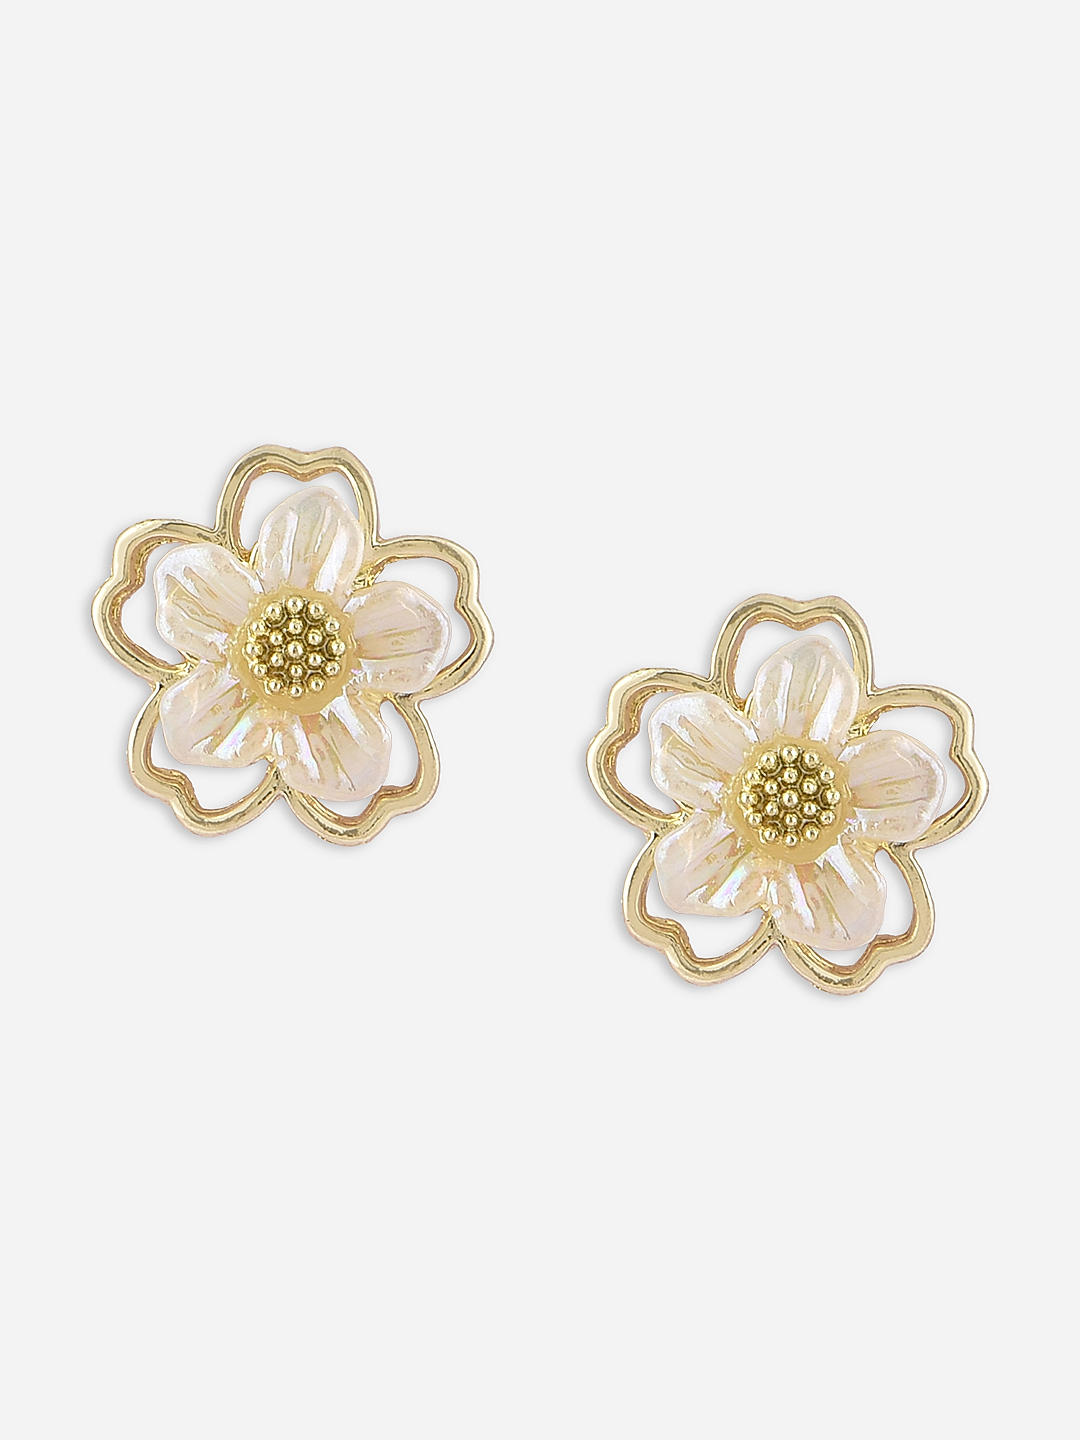 Romantic White Flower Earrings – Nicholls Jewellery